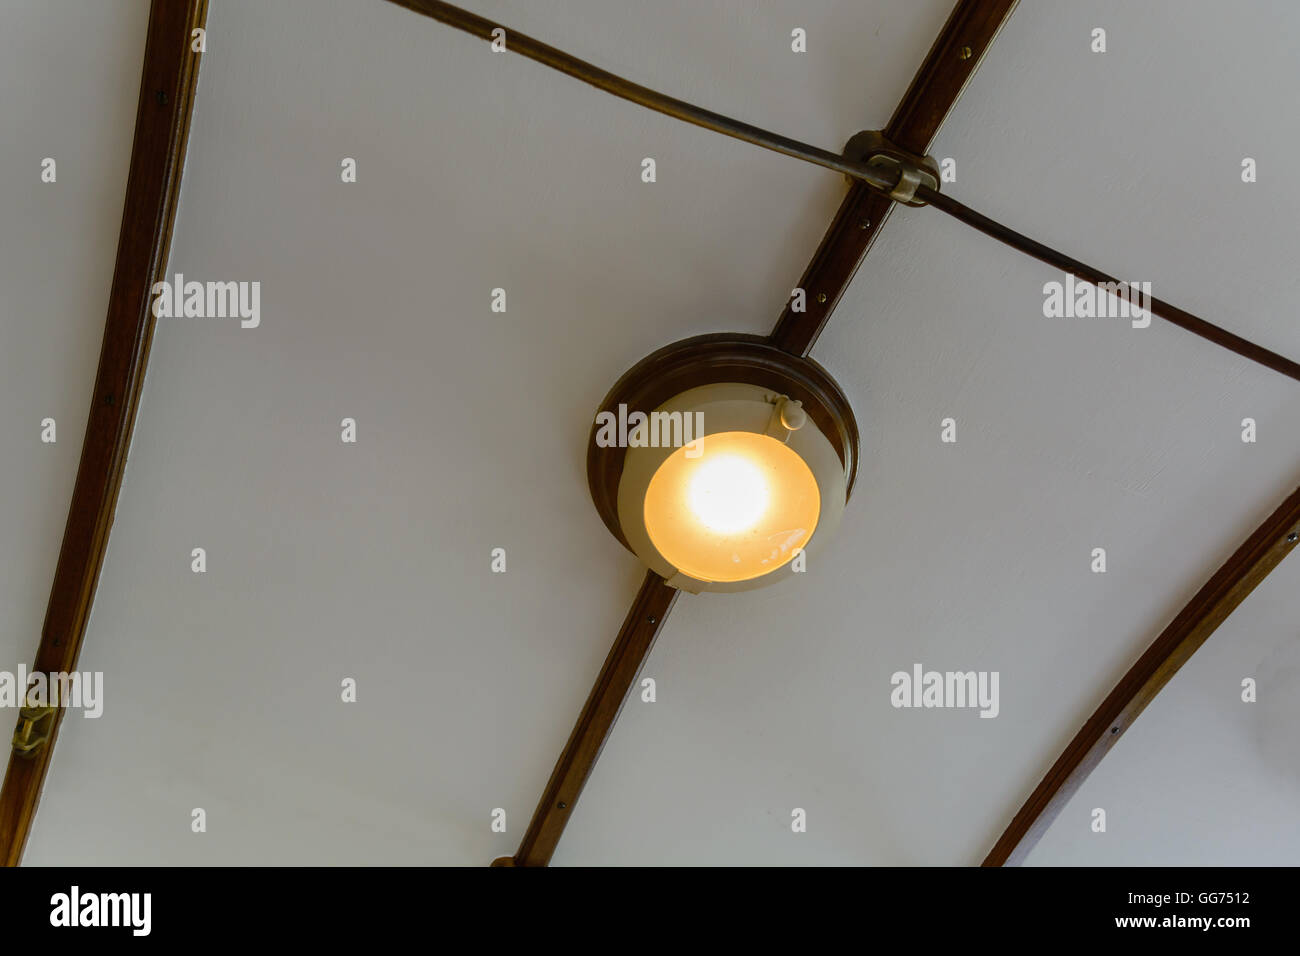 Beleuchtung Lampe in der Decke eingebaut Stockfoto